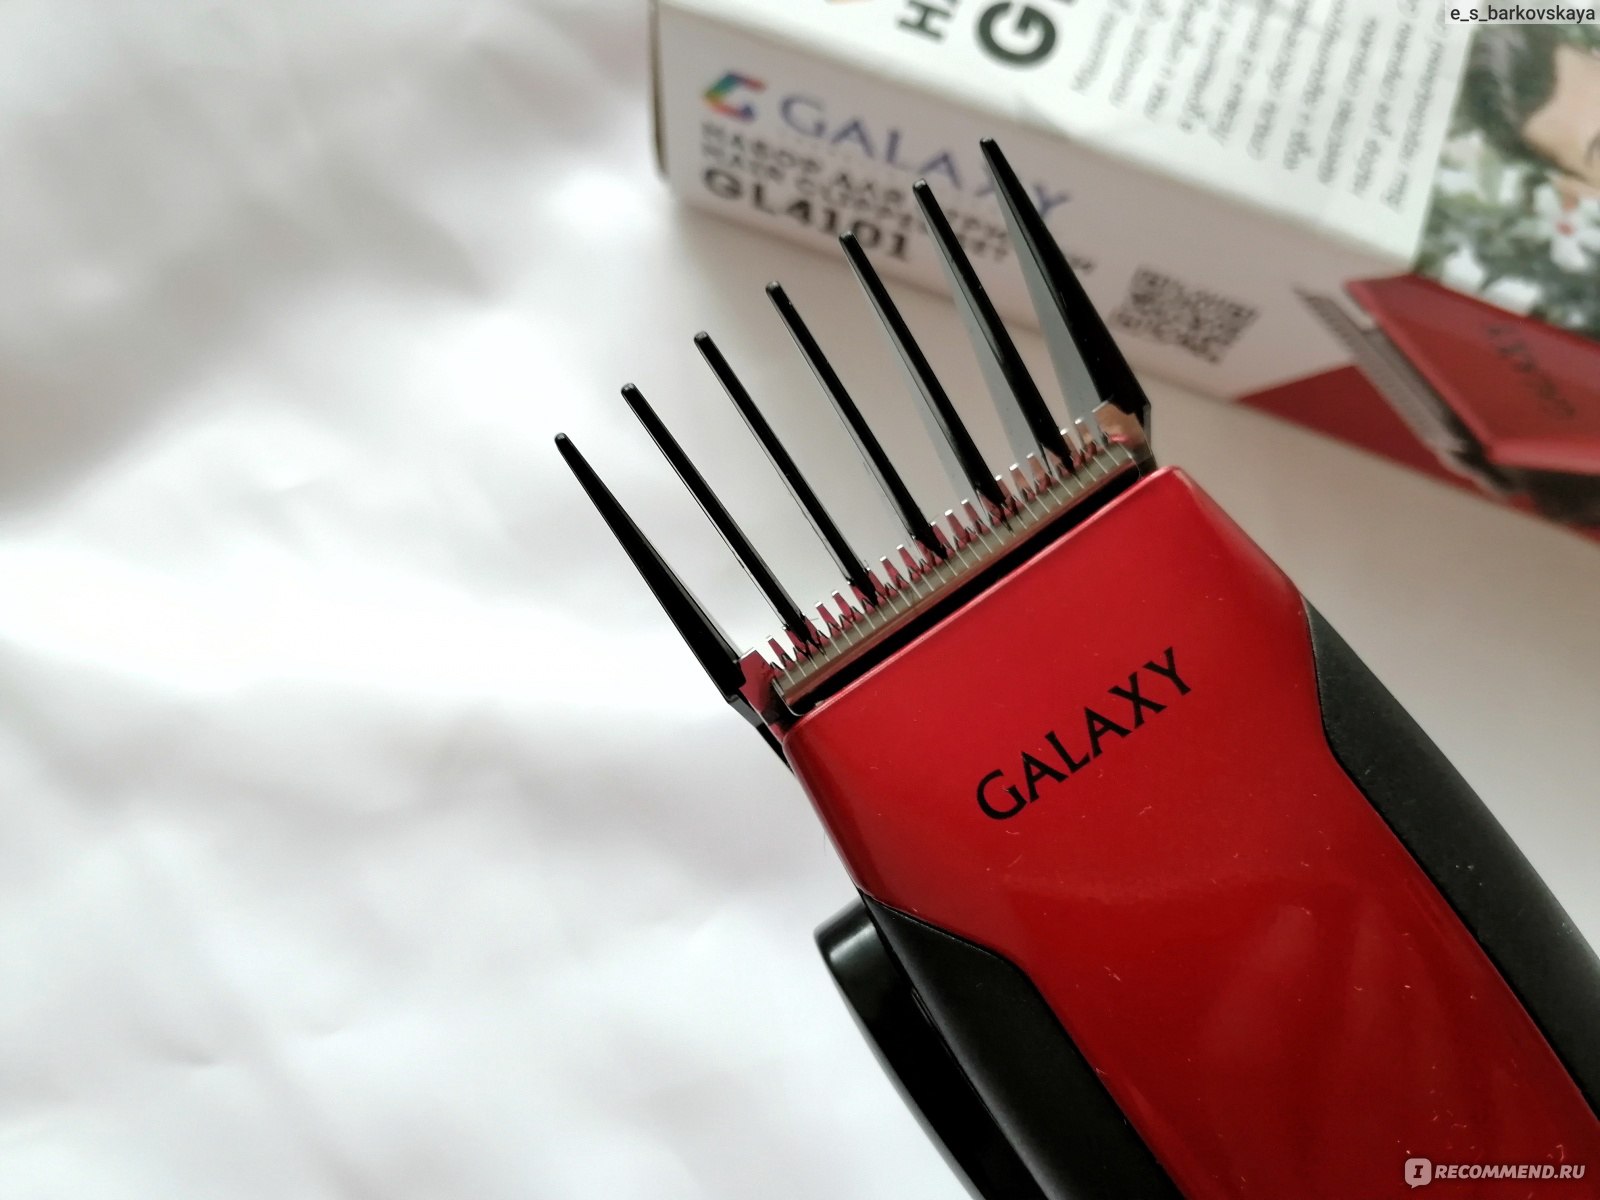 Машинка для стрижки волос galaxy gl 4106